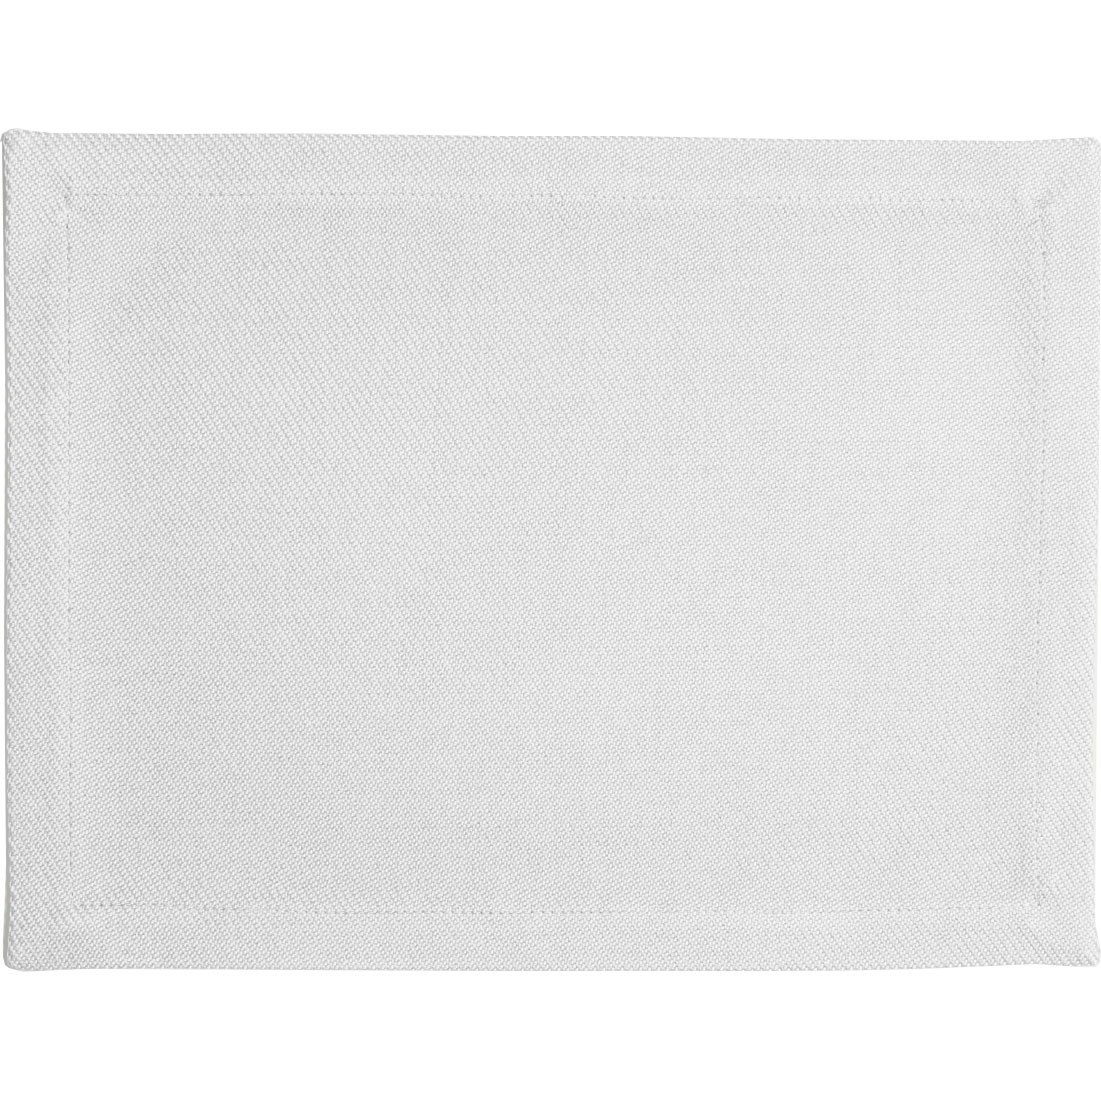 Plain Placemat 35x45 cm, White